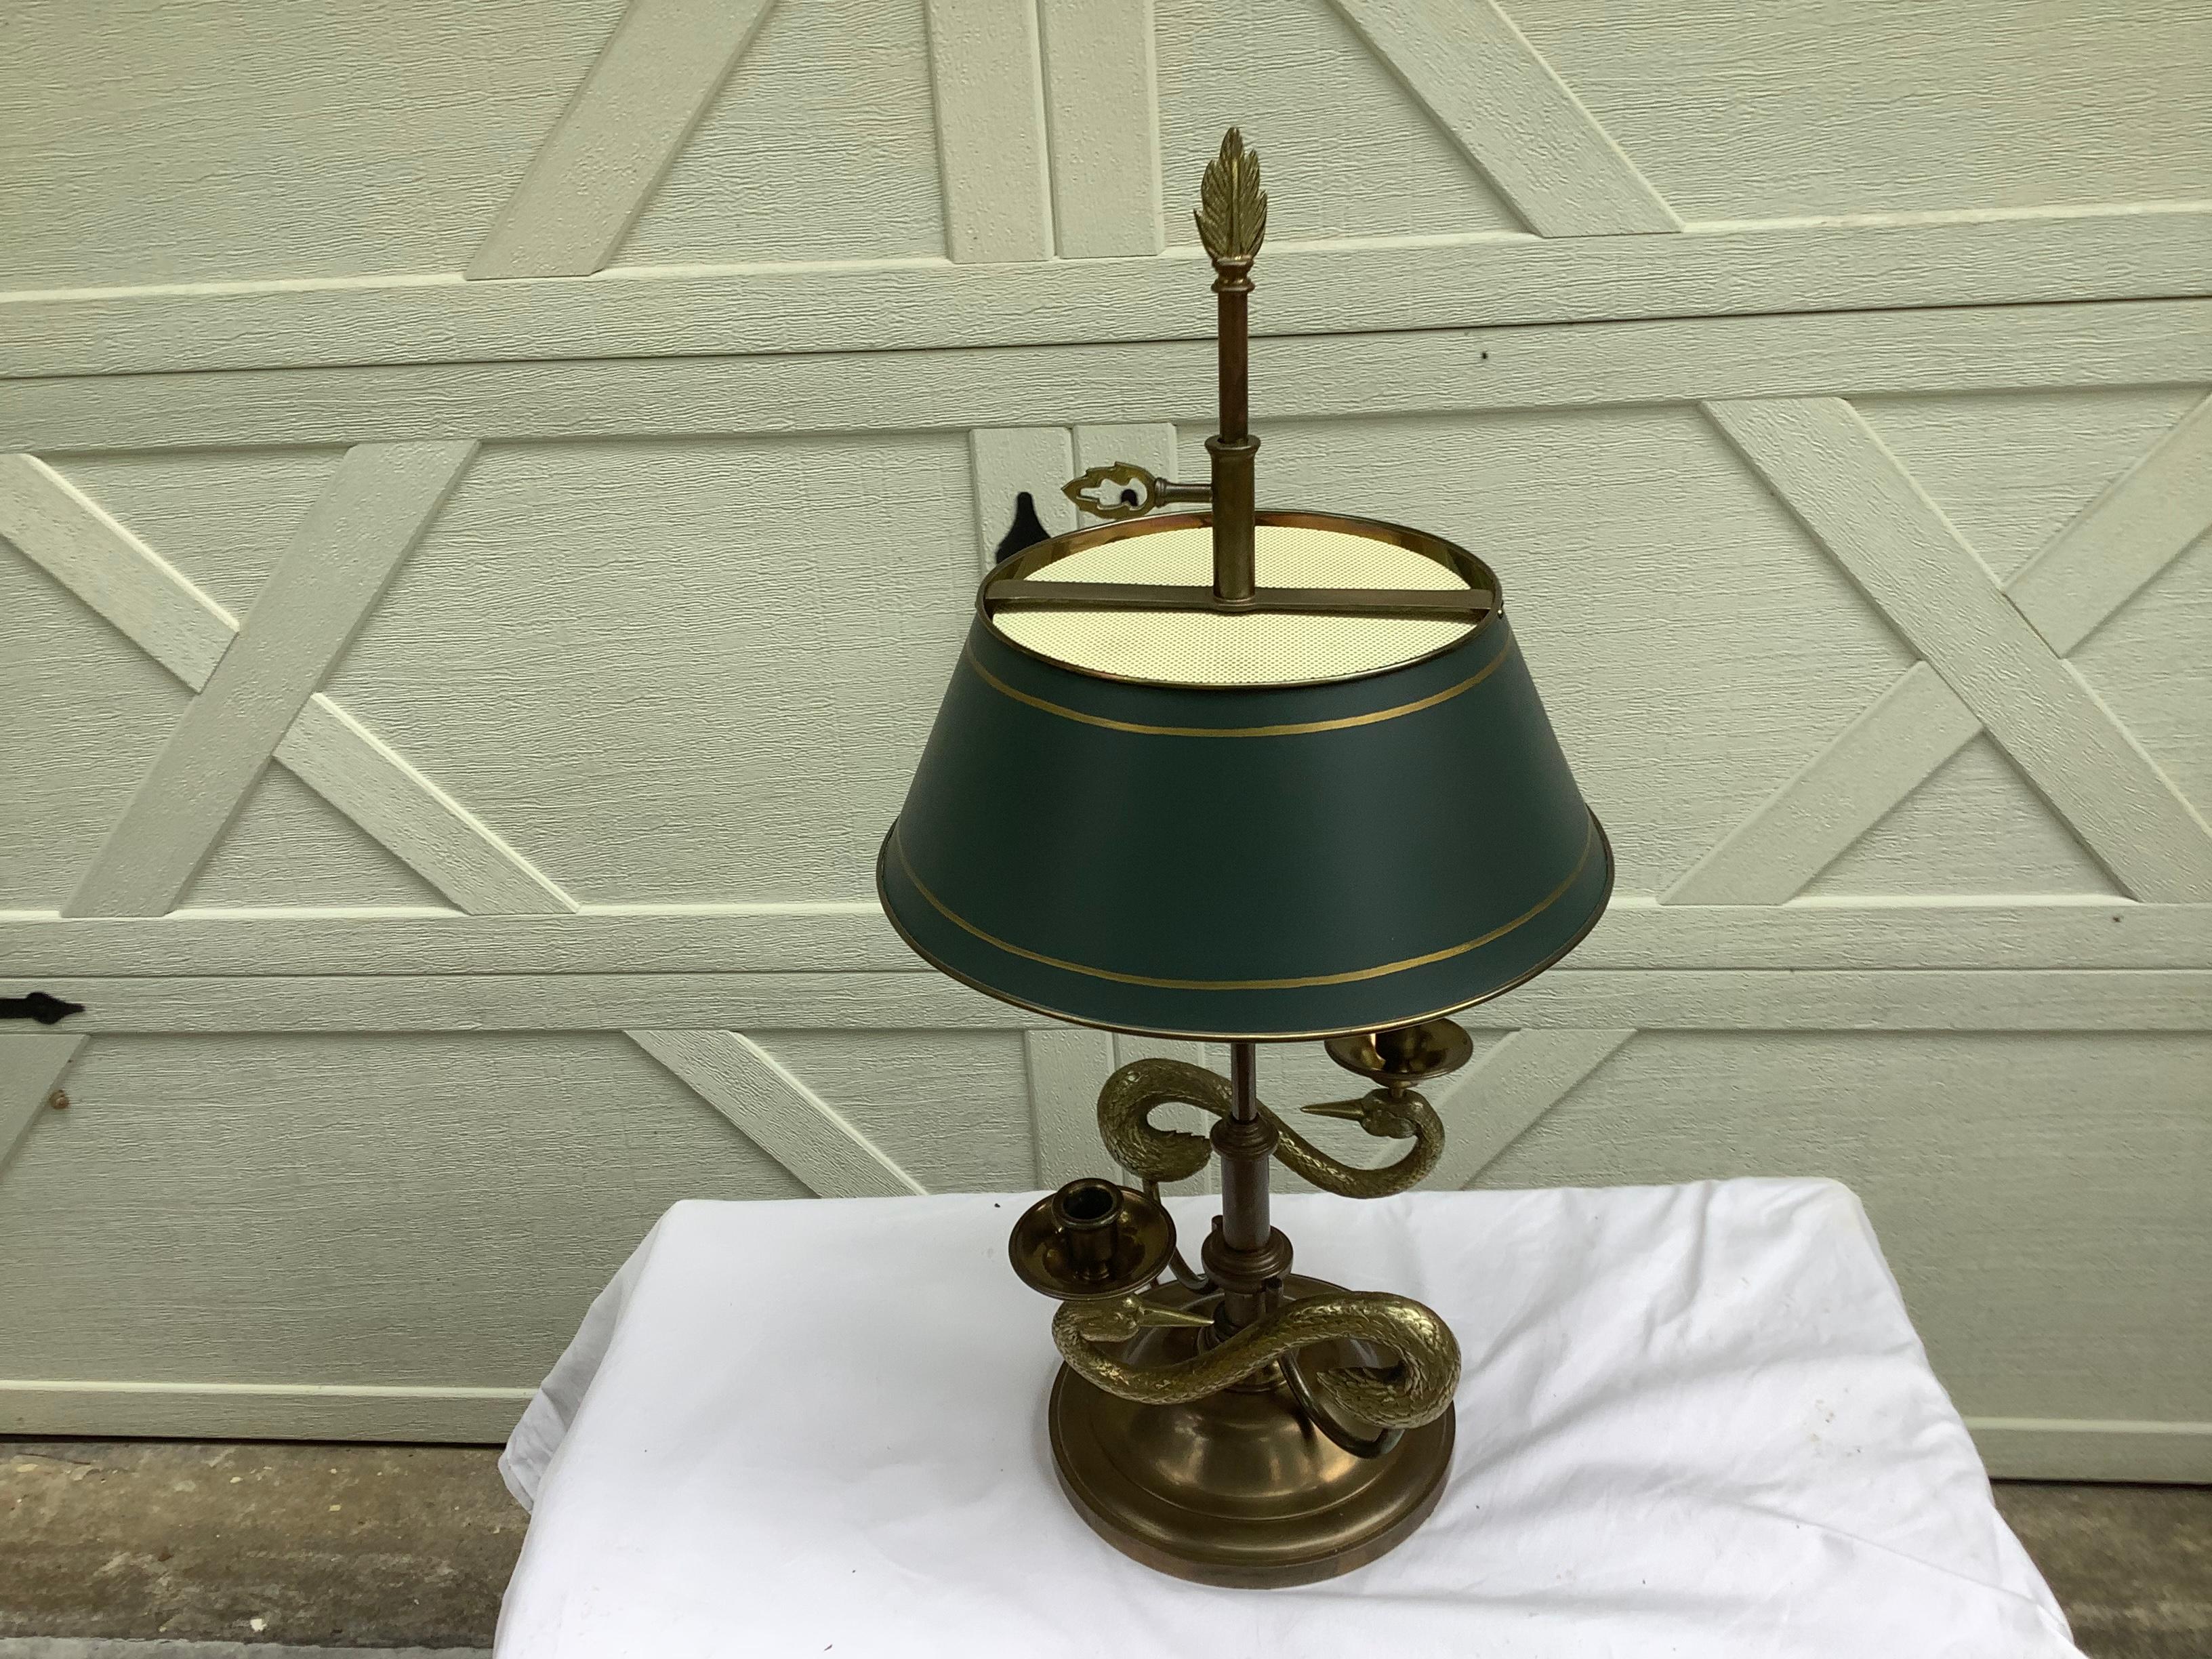 Klassische Lampe im Bouillotte-Stil von Chapman, datiert 1982. Originale Patina auf dem Messing, mit grünem Tüllschirm. Der Schirm hebt und senkt sich nicht, wie bei einer echten Bouilotte-Lampe. Ineinander verschlungene Schwäne bilden den Sockel